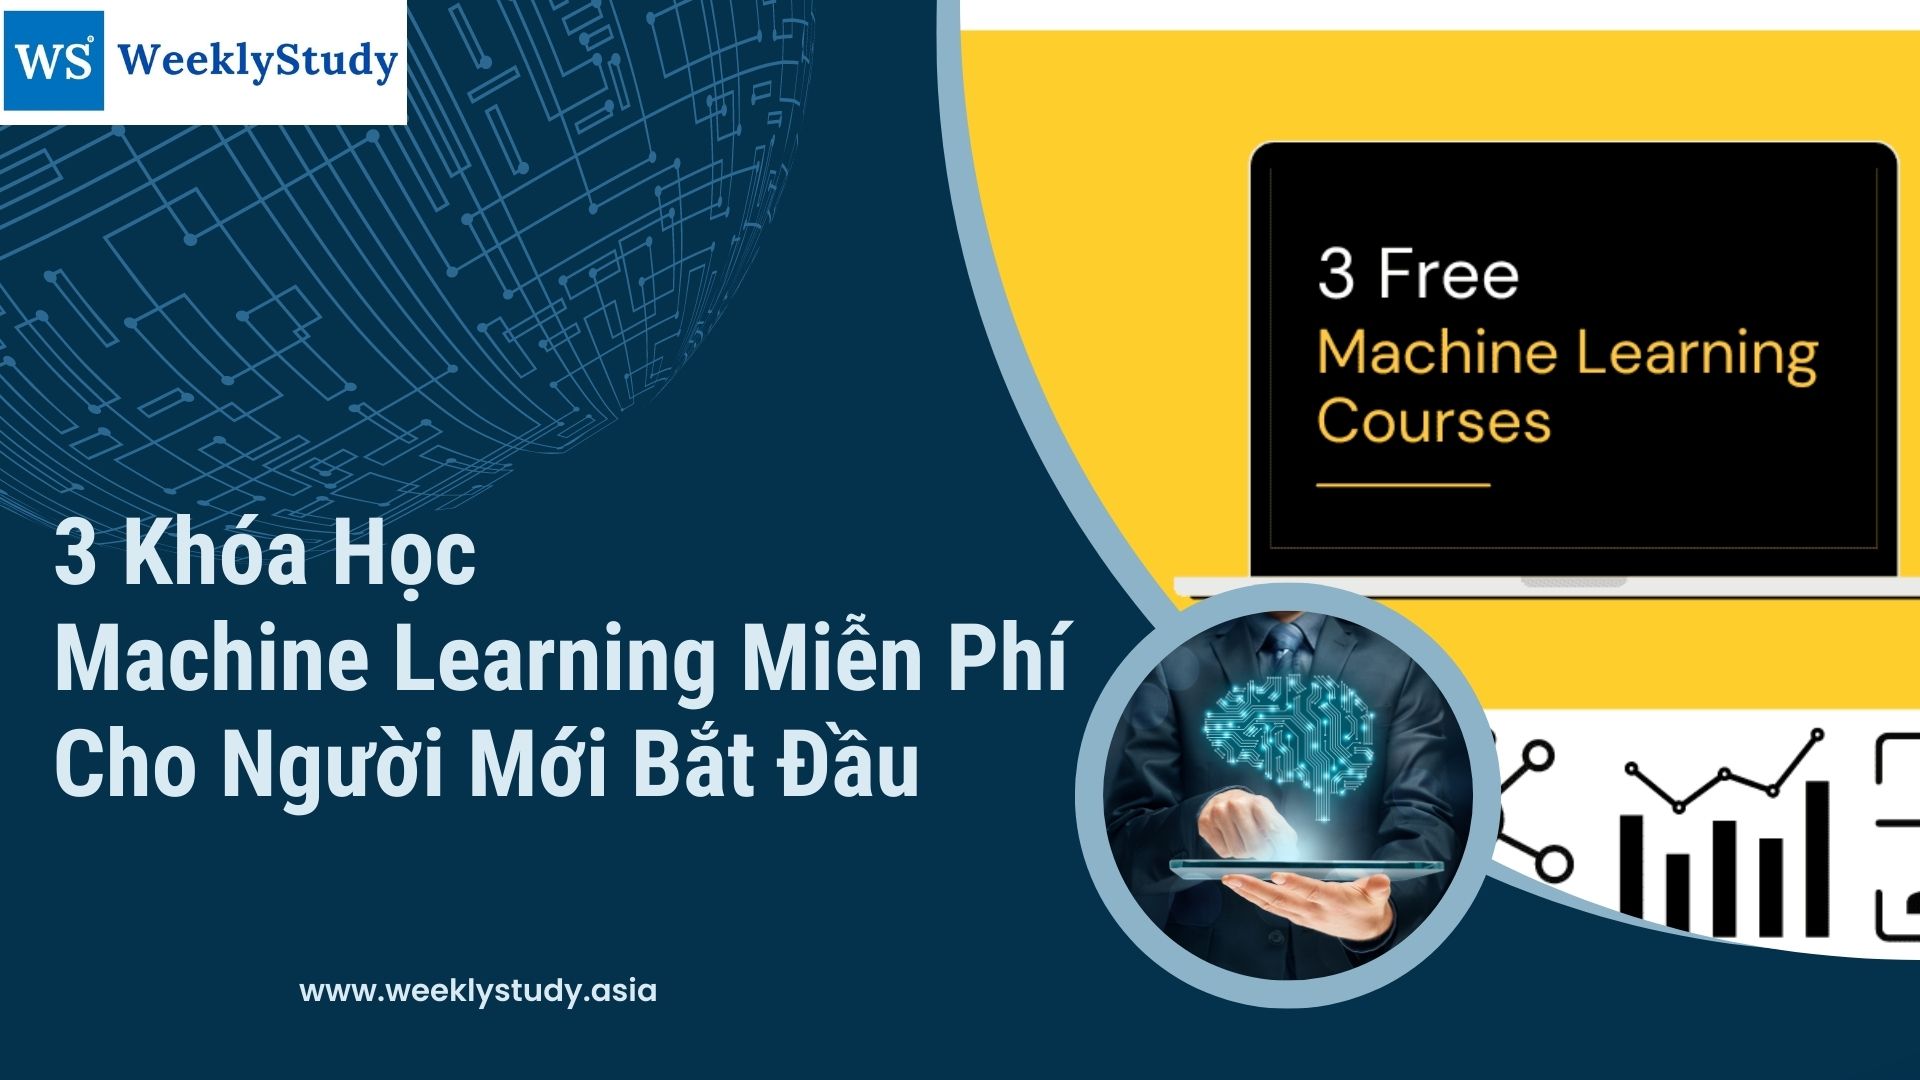 3-khoa-hoc-machine-learning-mien-phi-cho-nguoi-moi-bat-dau